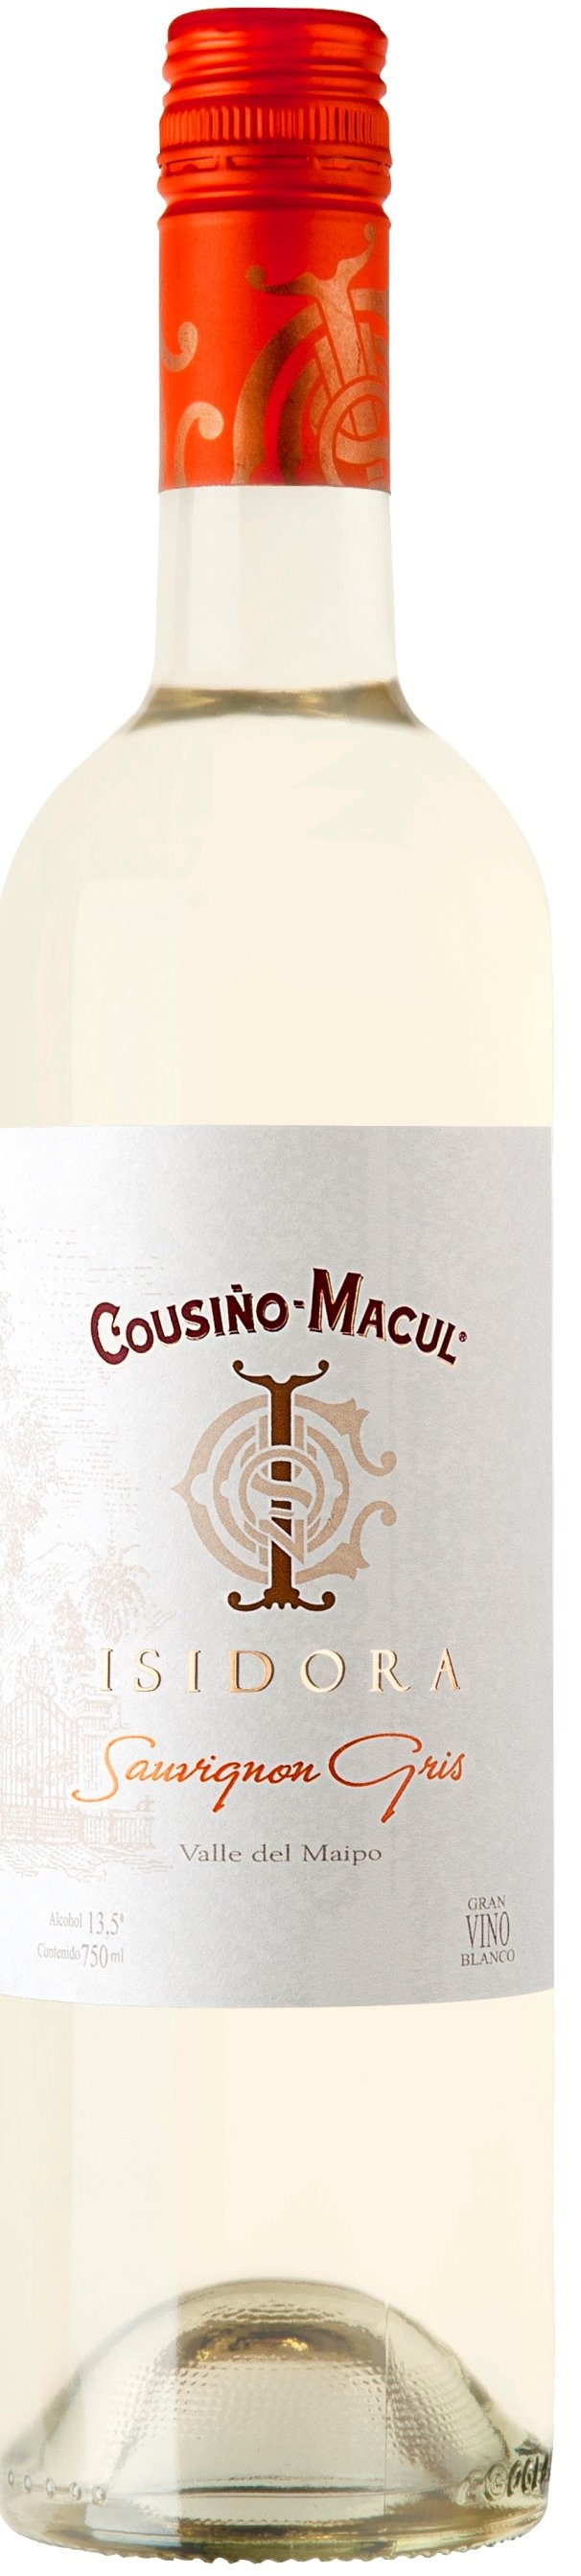 Cousino-Macul Sauvignon Gris Isadora 2017